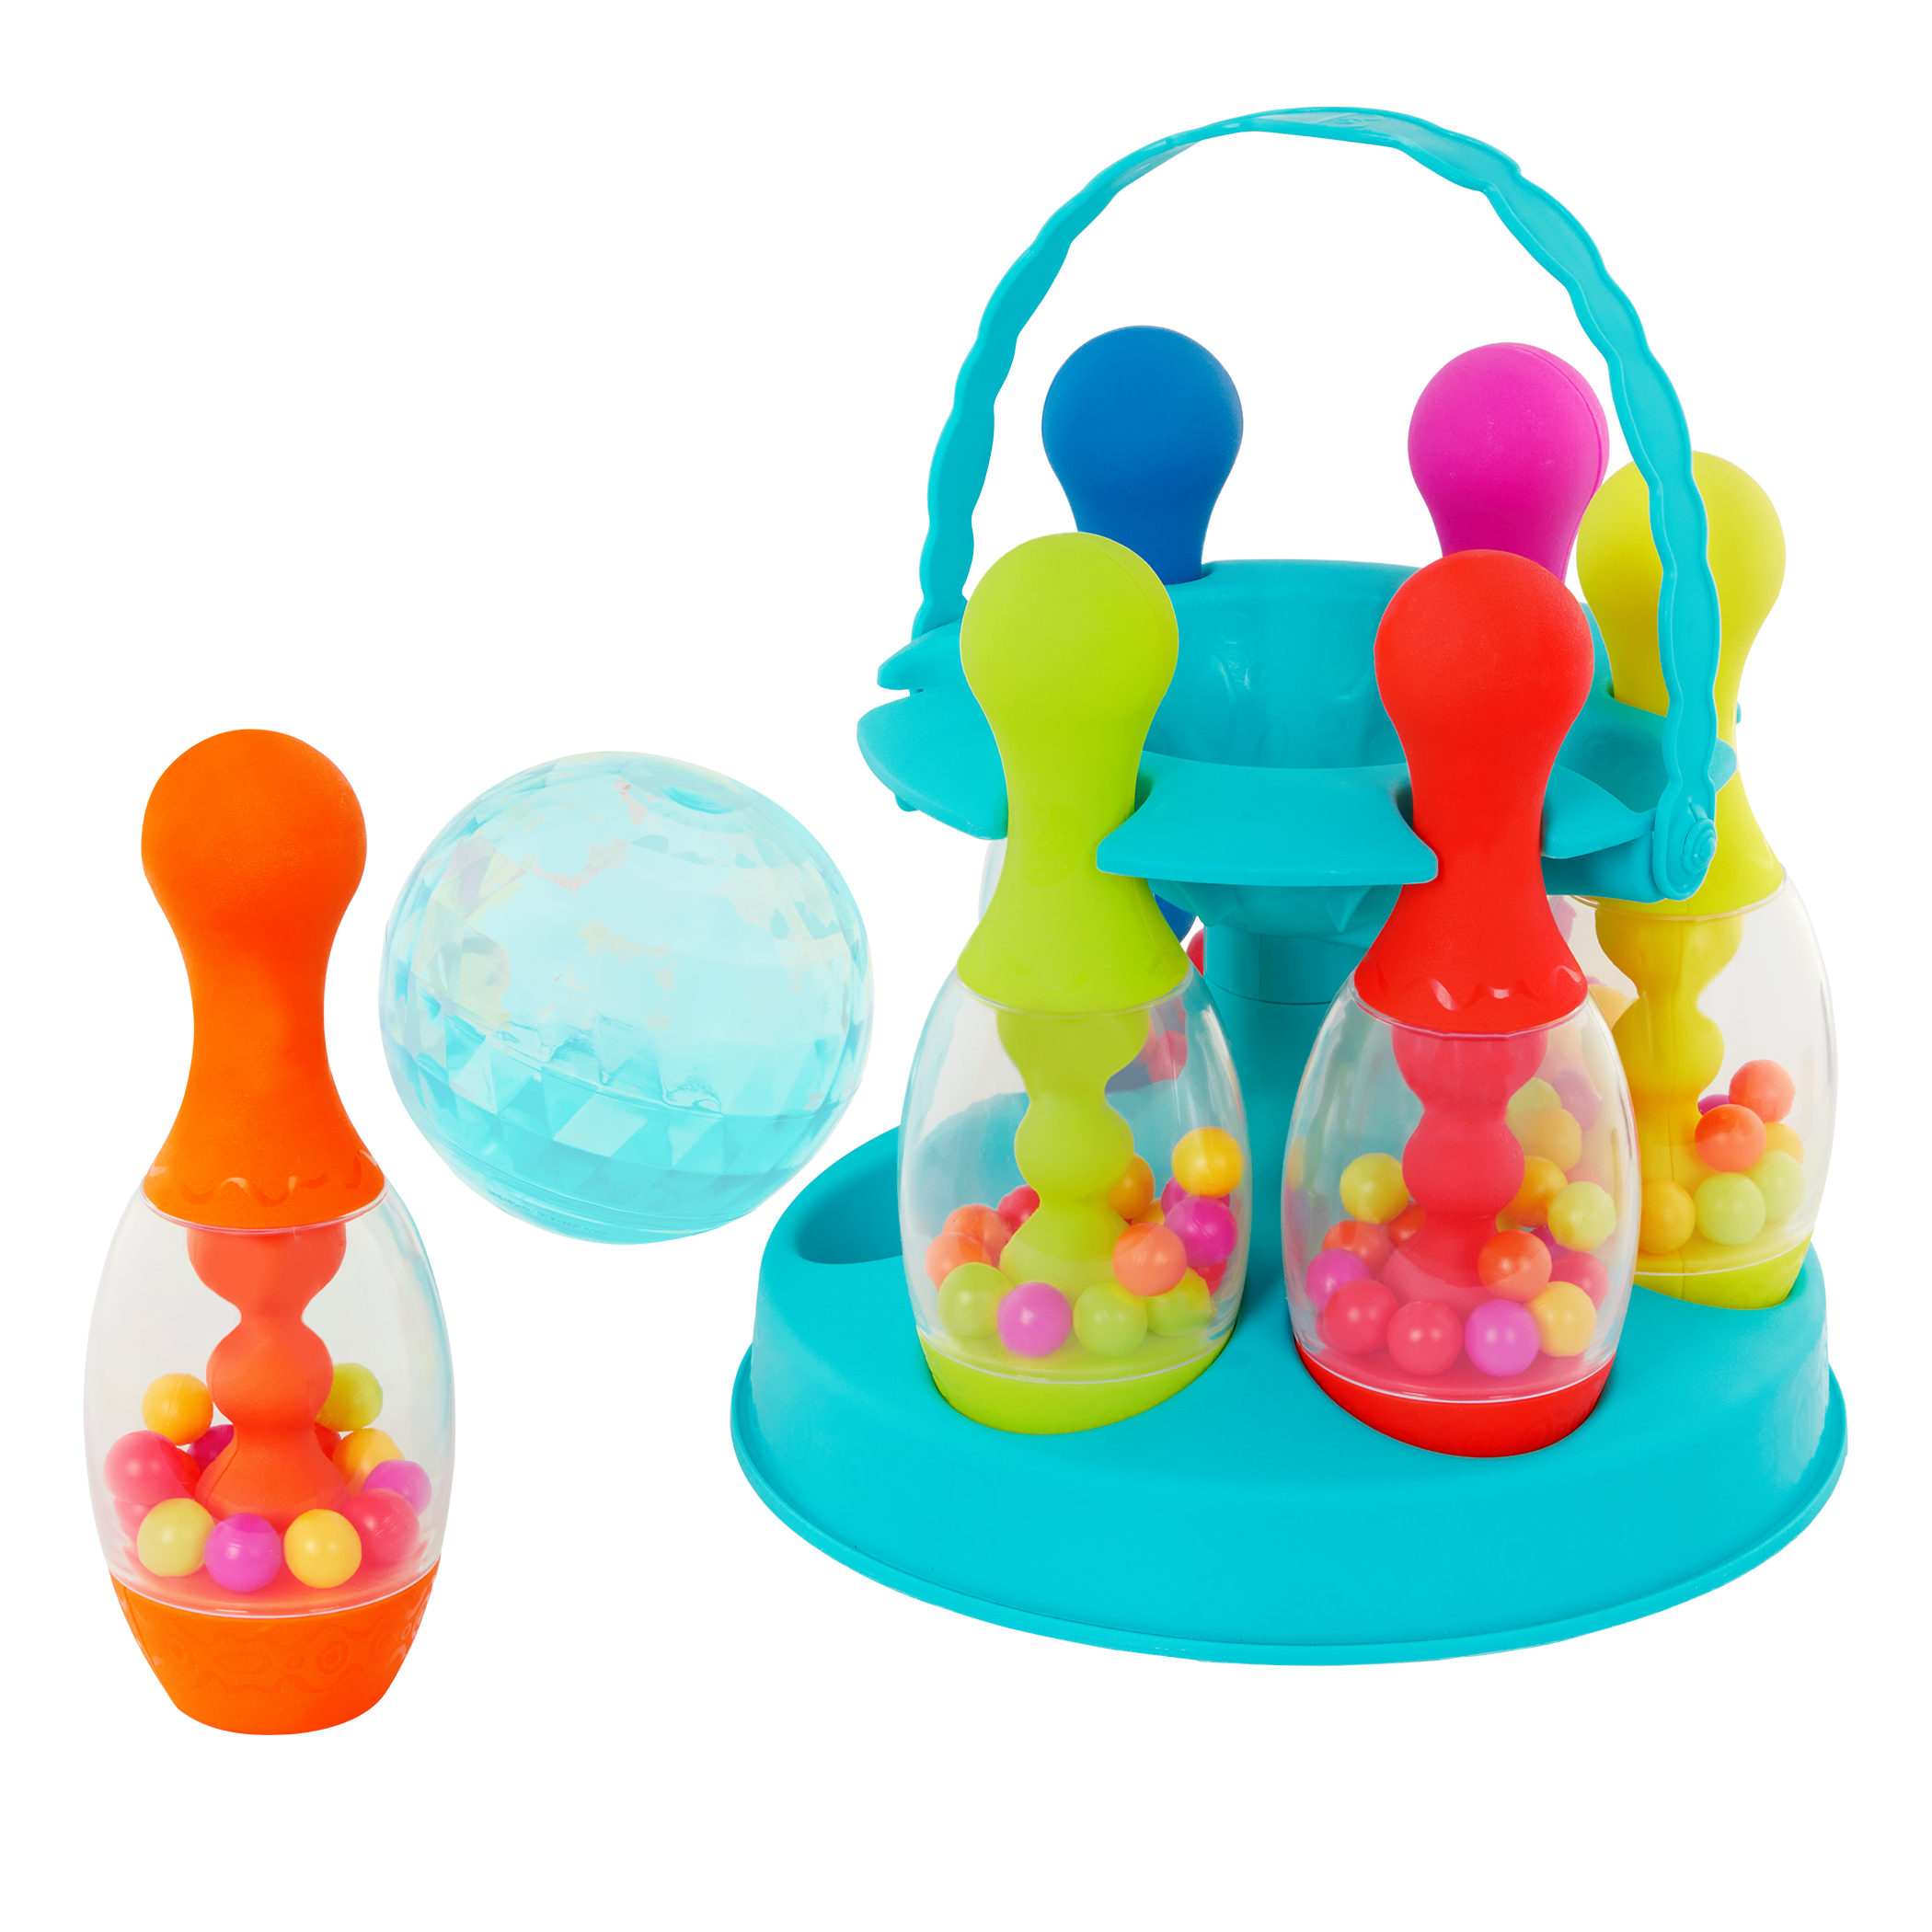 Toy bowling set.